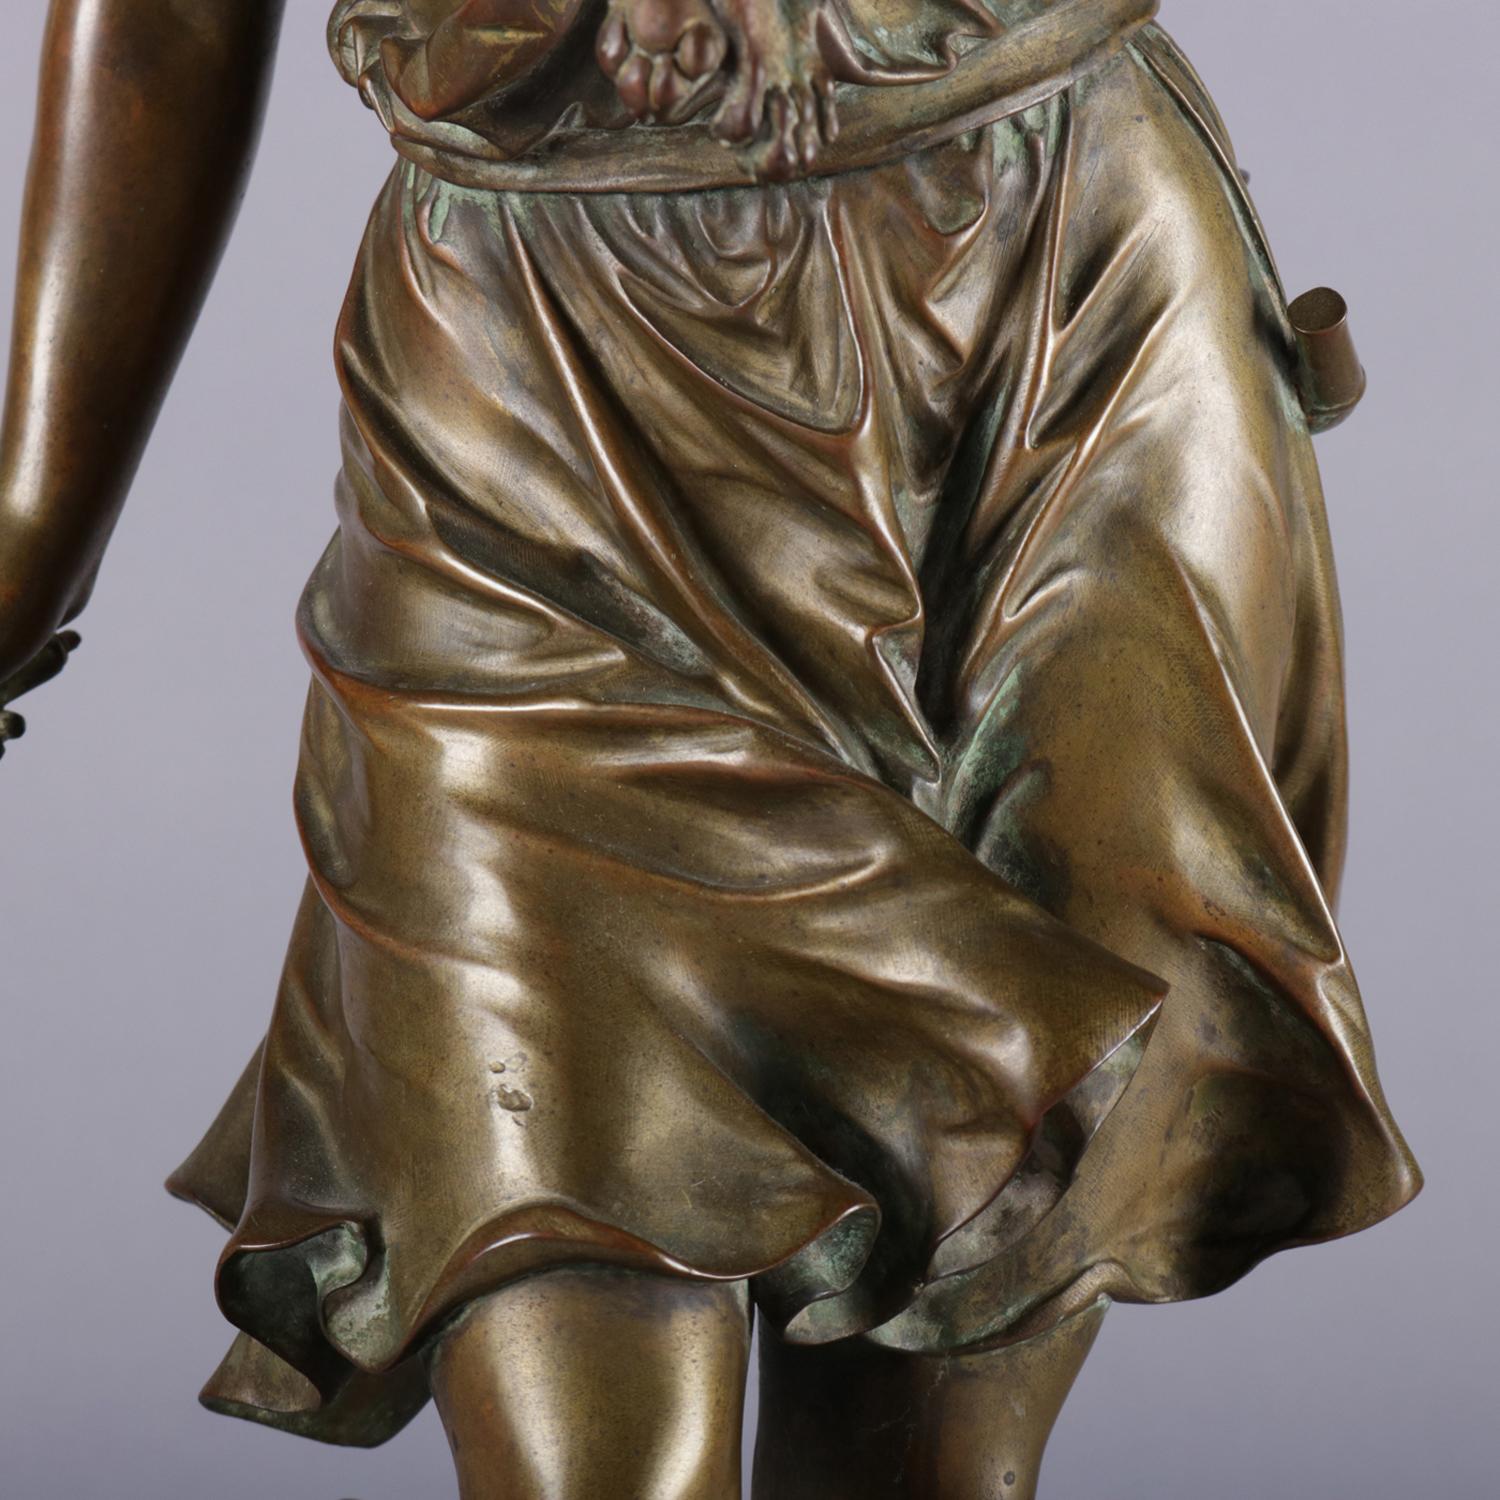 Antique French Figural Cast Bronze Portrait Sculpture of a Boy Signed Bouret 1